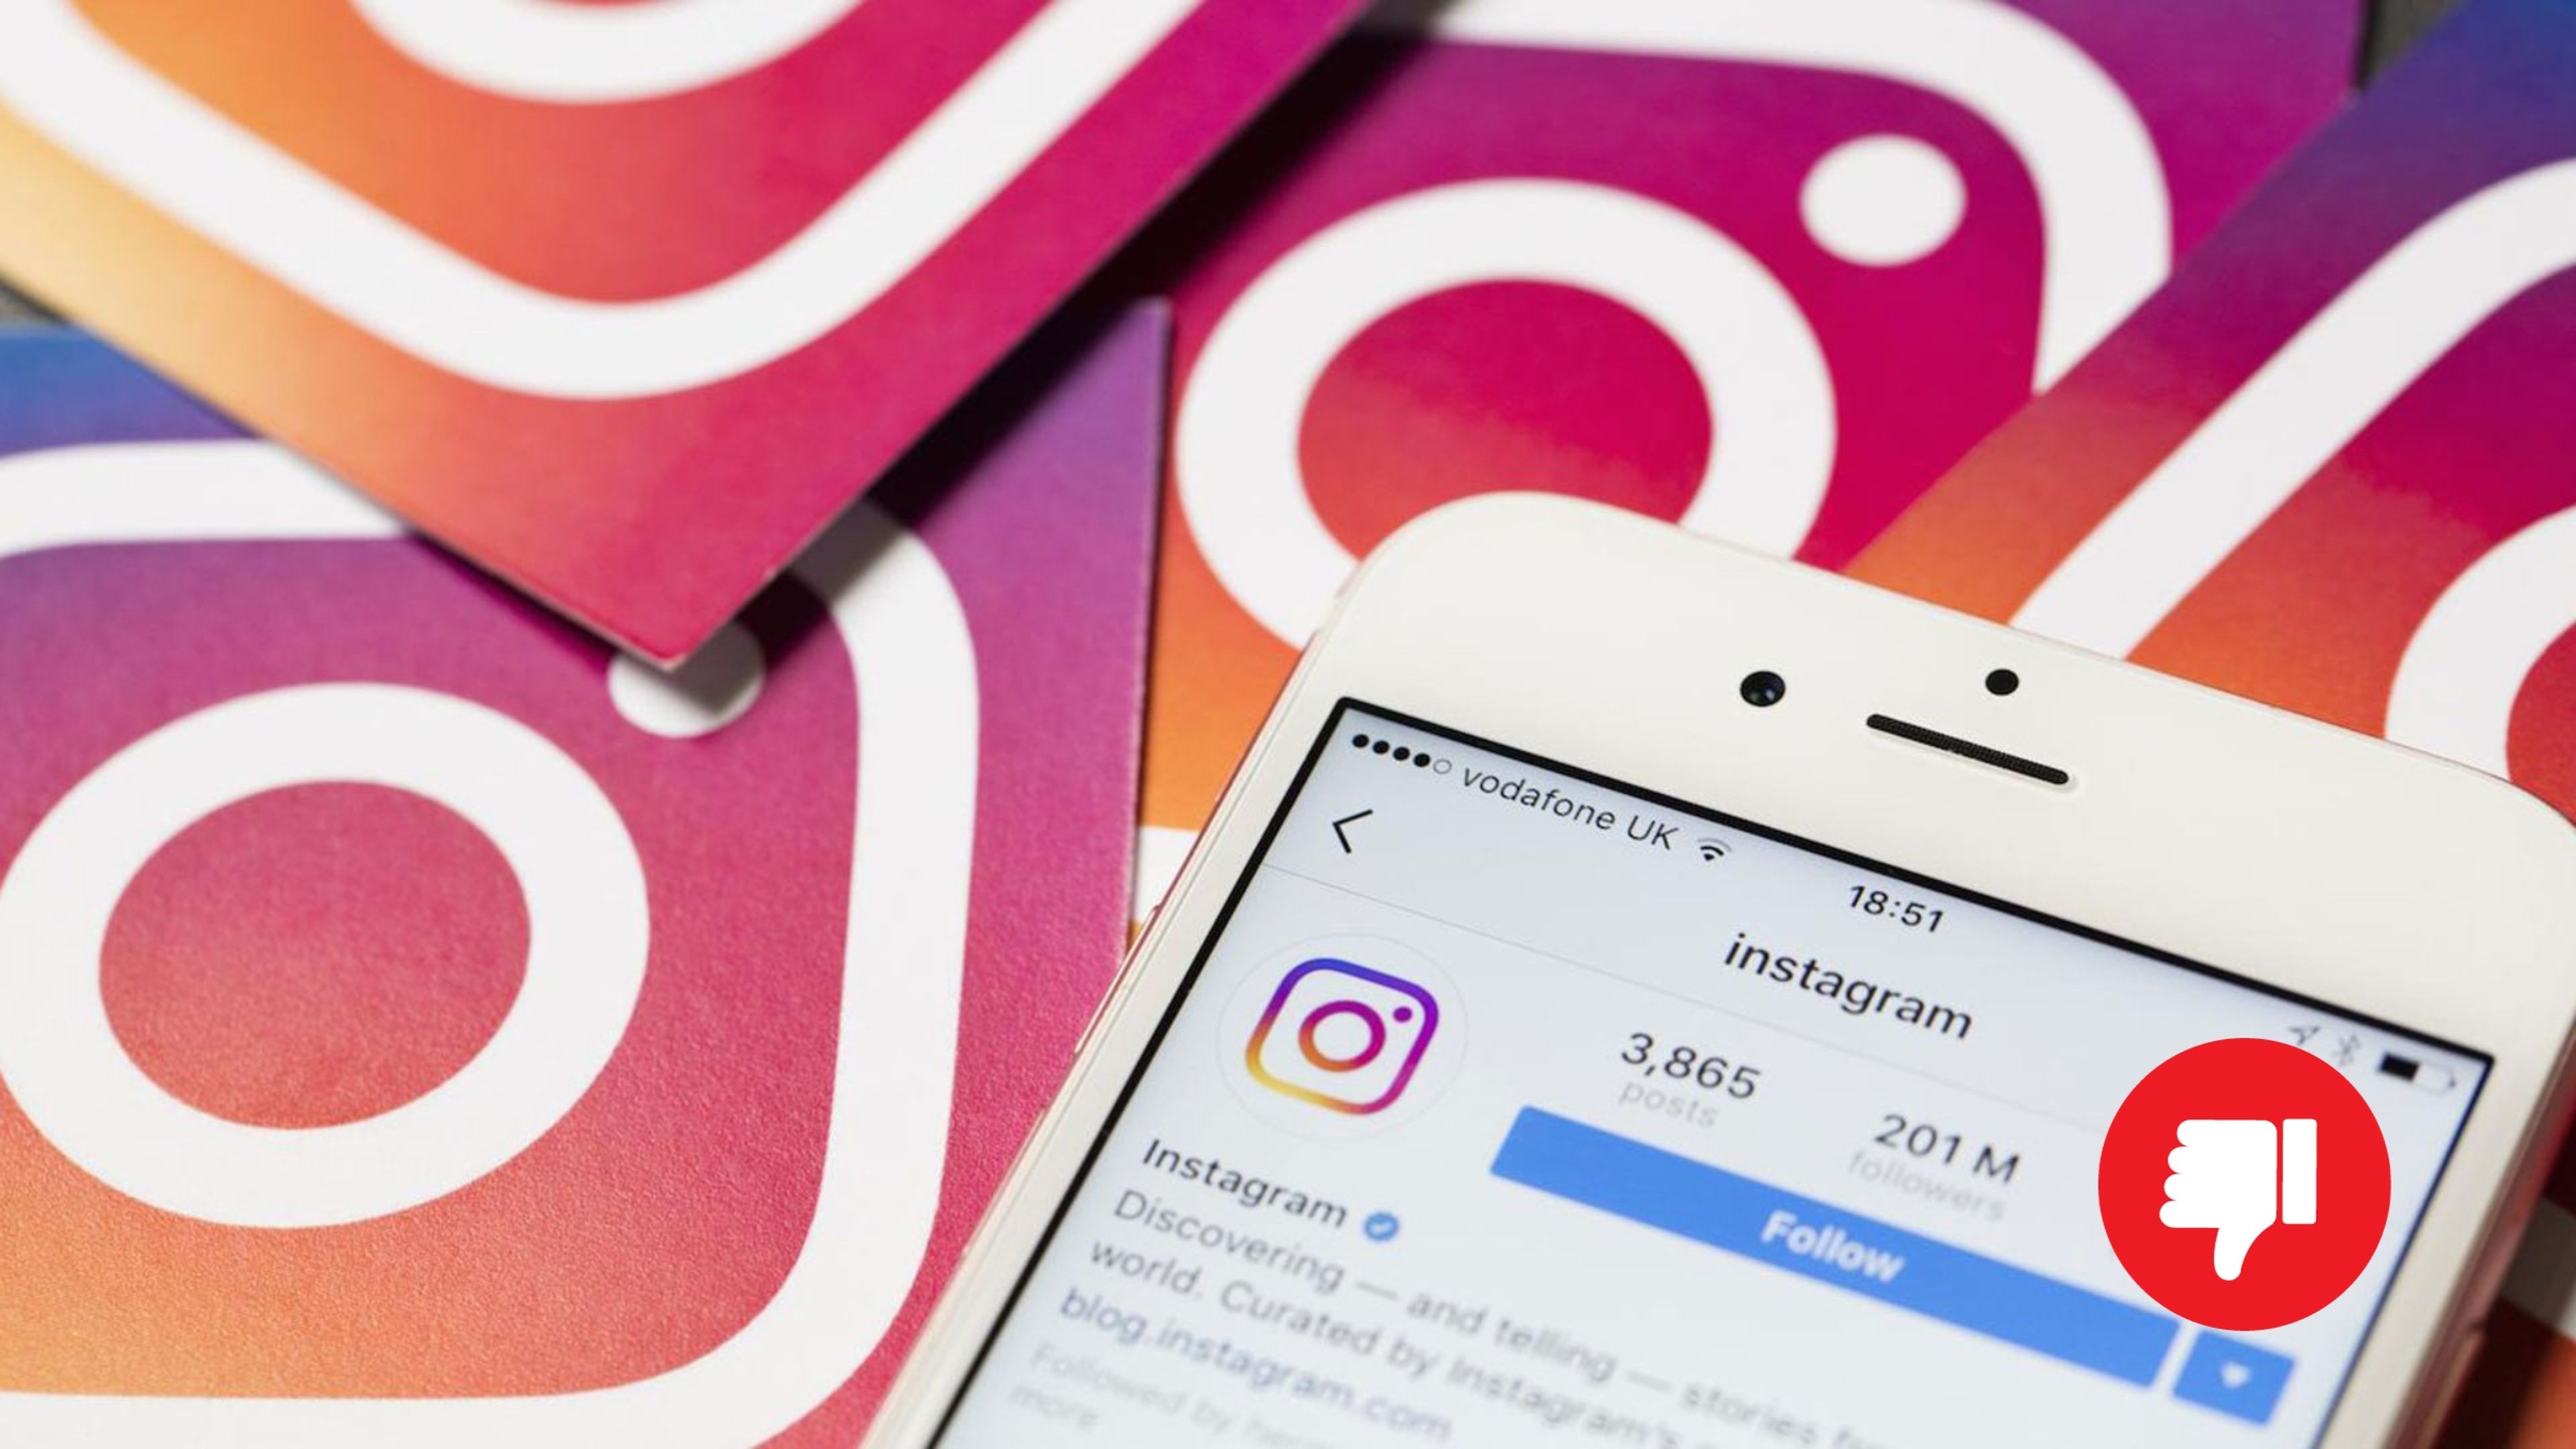 Instagram caído: cómo saber si Instagram no funciona y las posibles soluciones